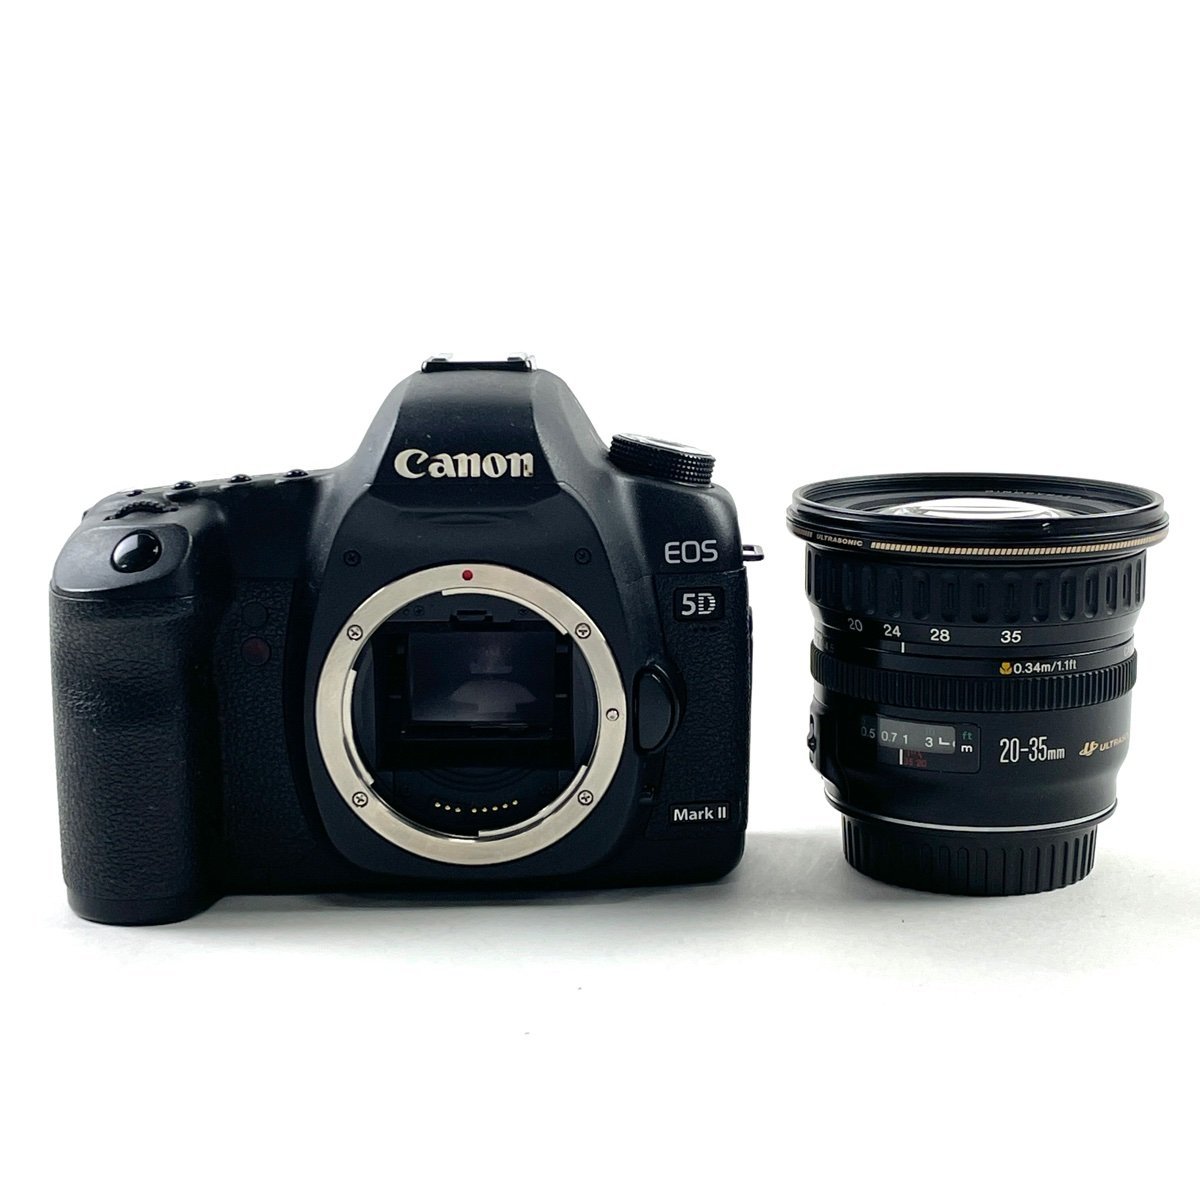 キヤノン Canon EOS 5D Mark II + EF 20-35mm F3.5-4.5 USM デジタル 一眼レフカメラ 【中古】